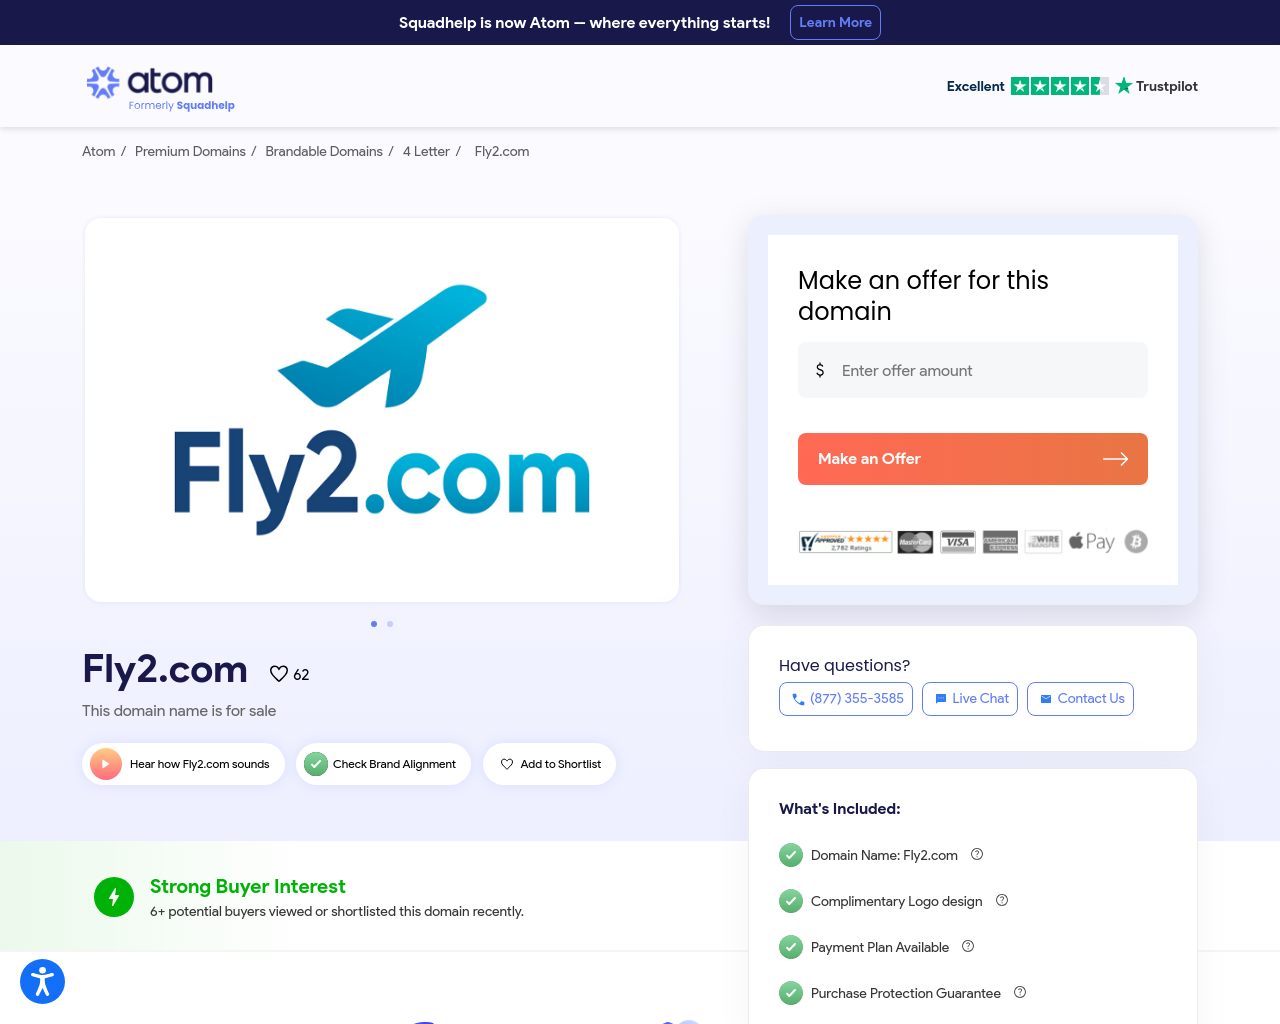 fly2.com